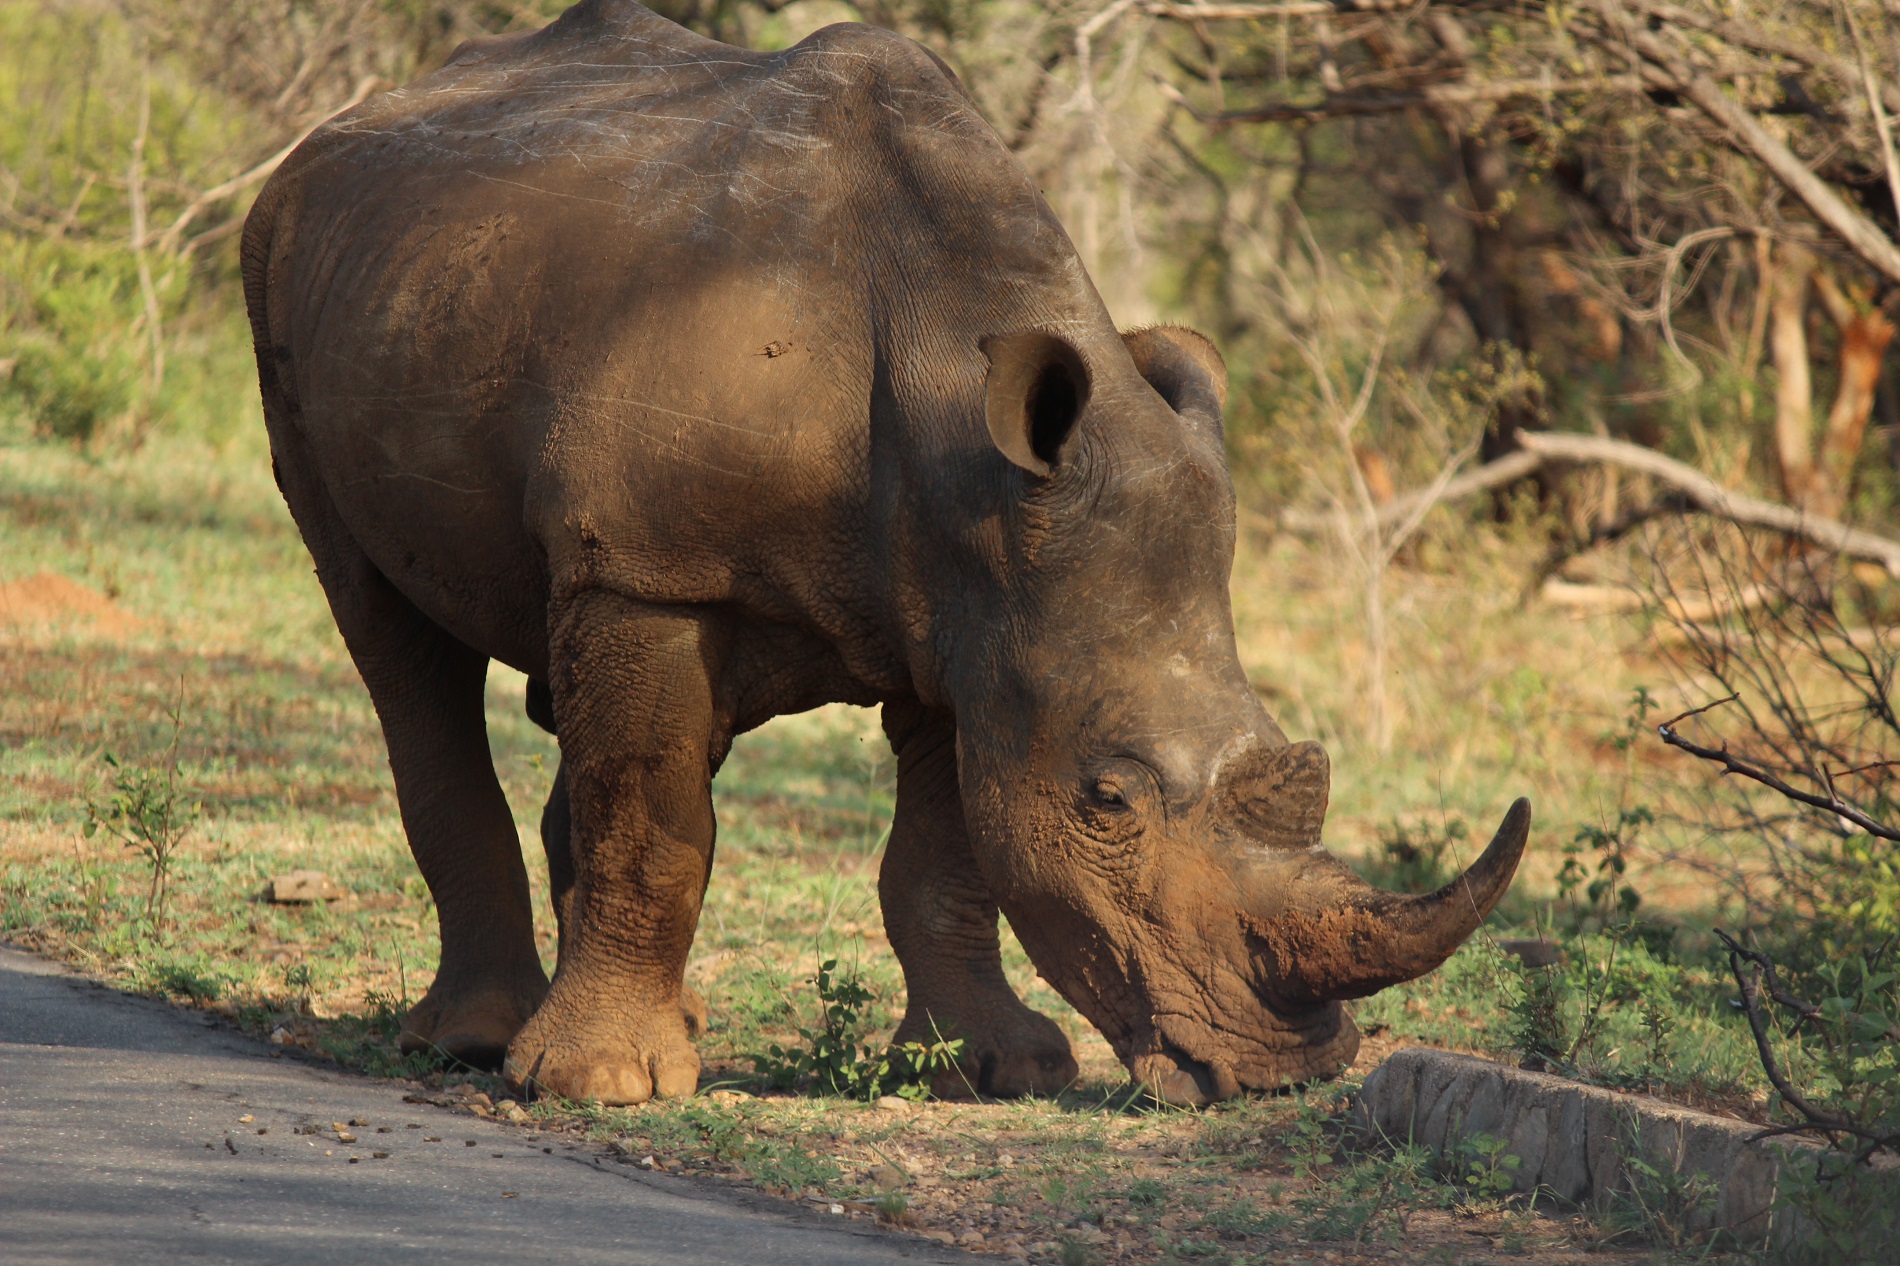 a rhinoceros on a road